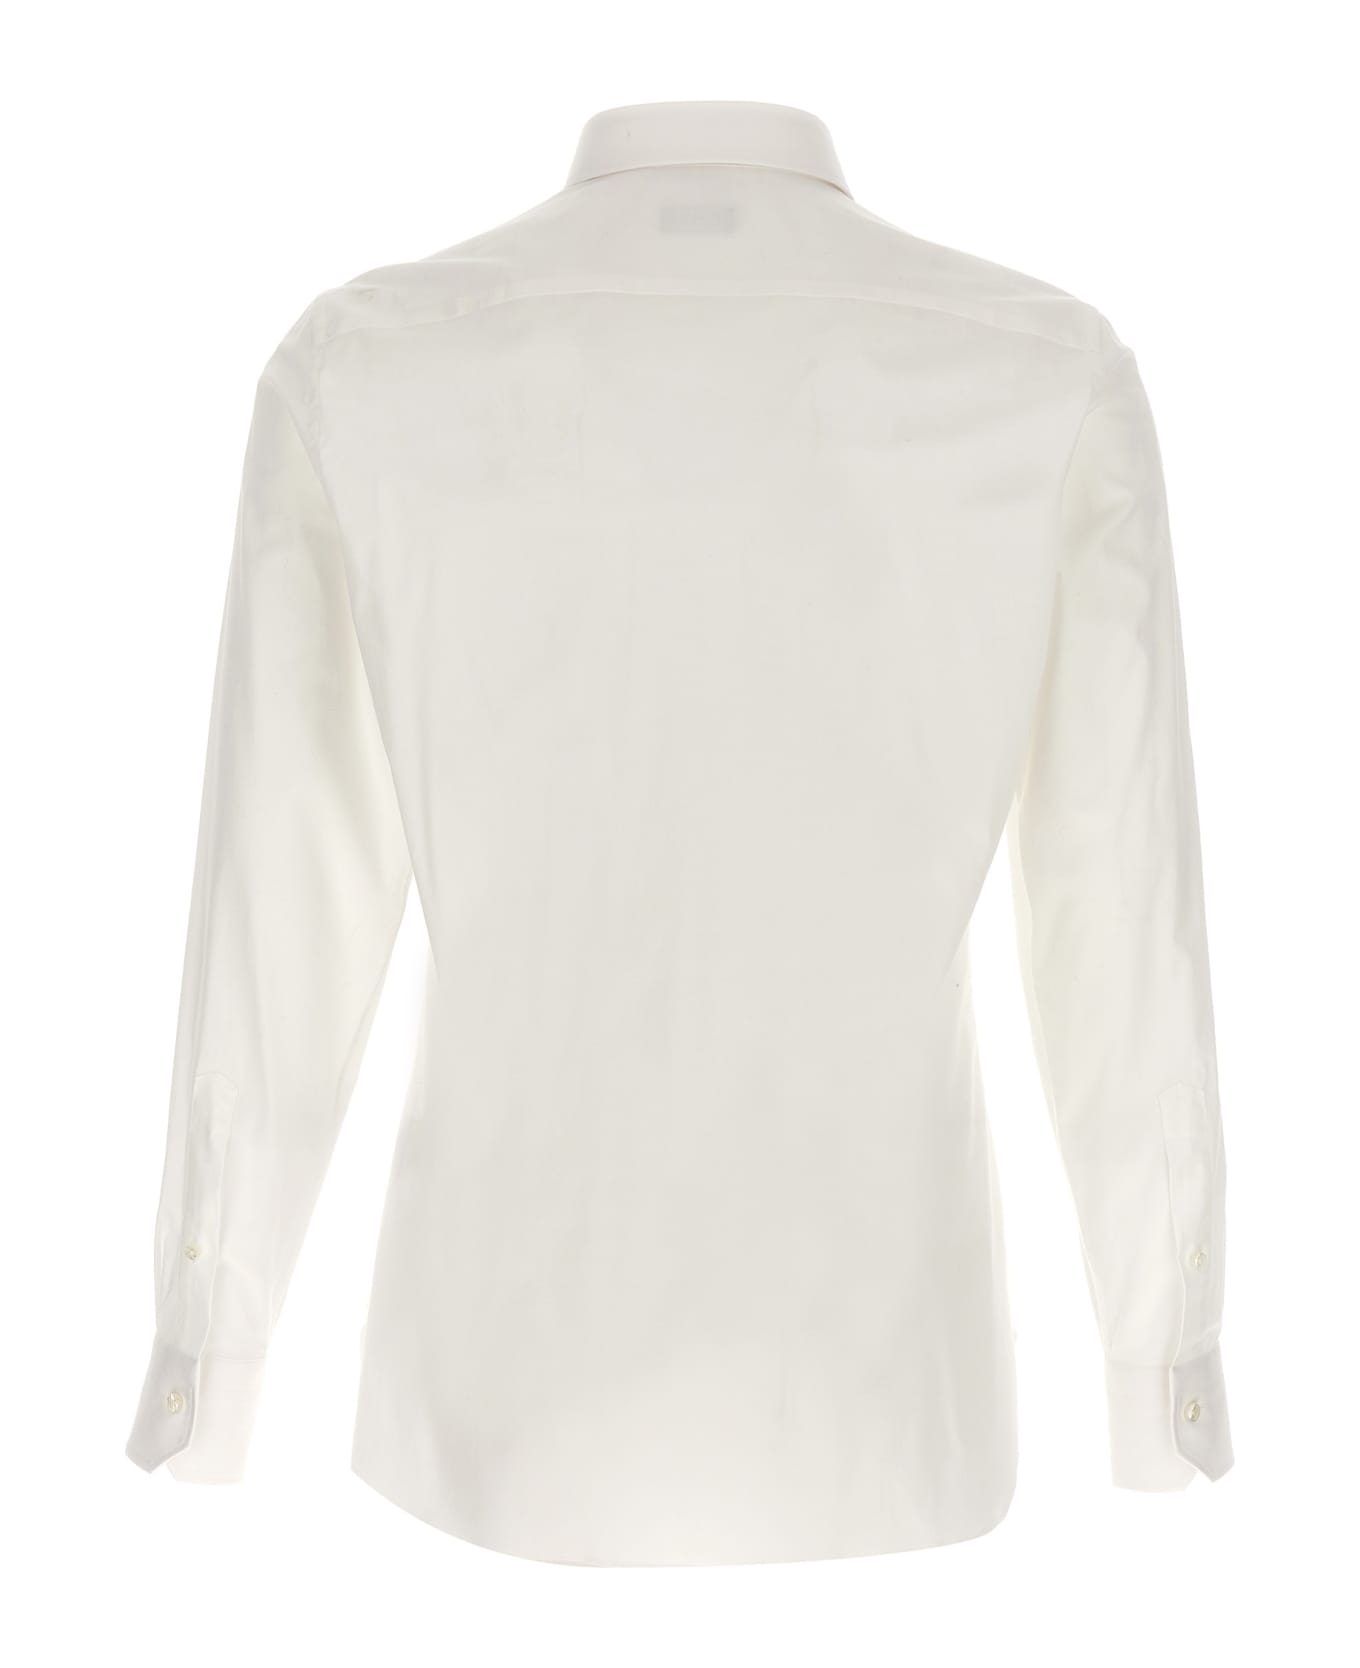 Zegna Stretch Cotton Shirt - White